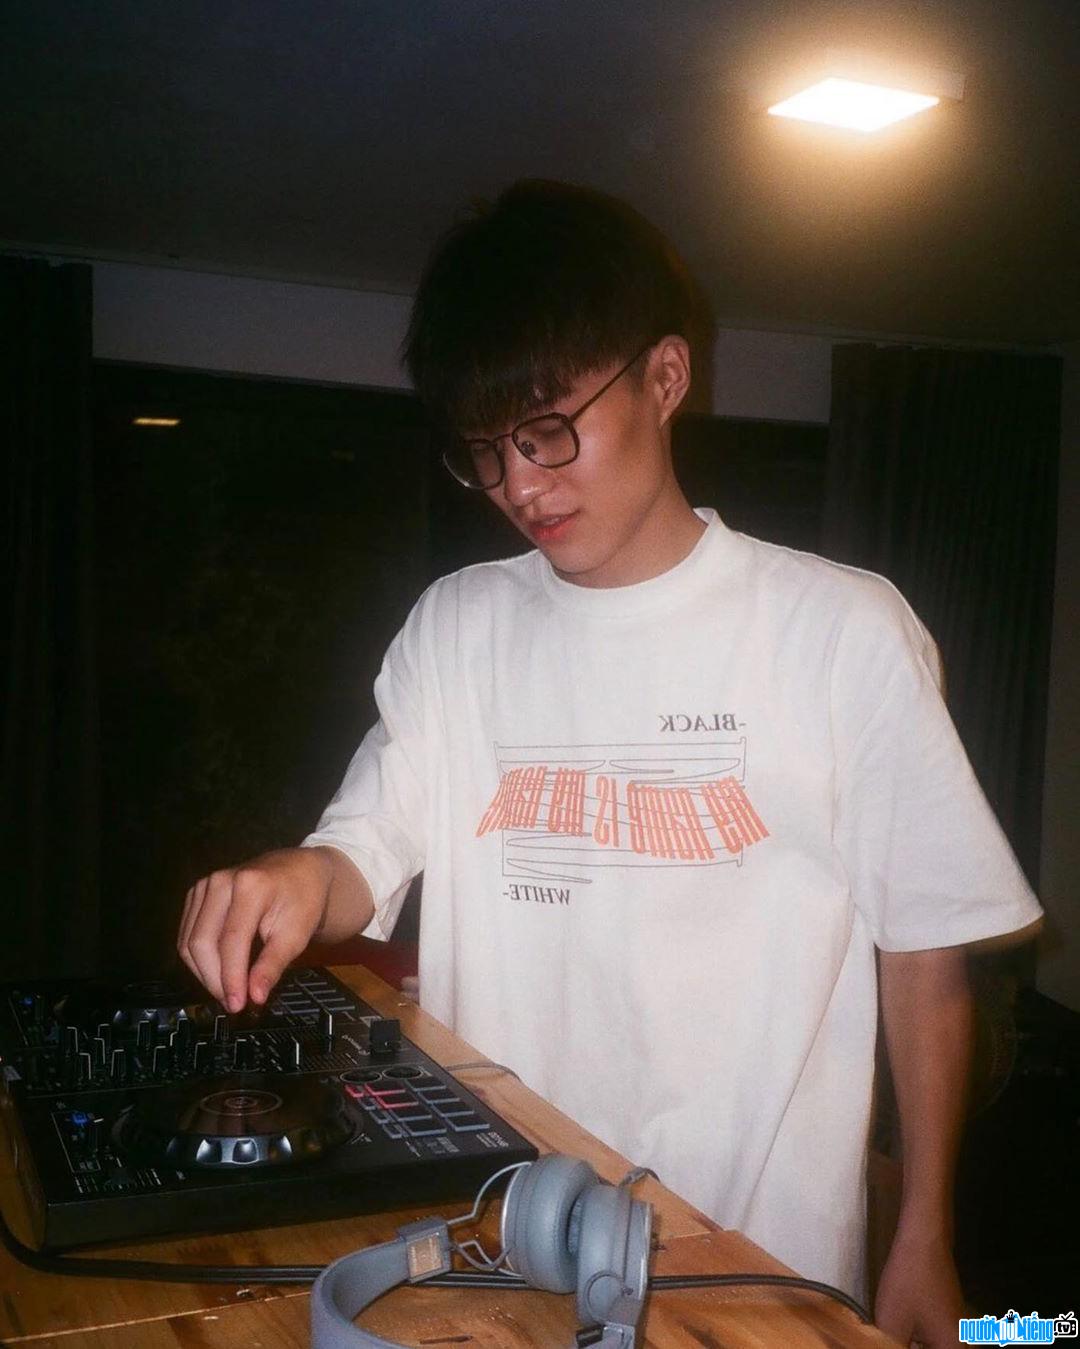  Trung Kien prepares for his DJ job